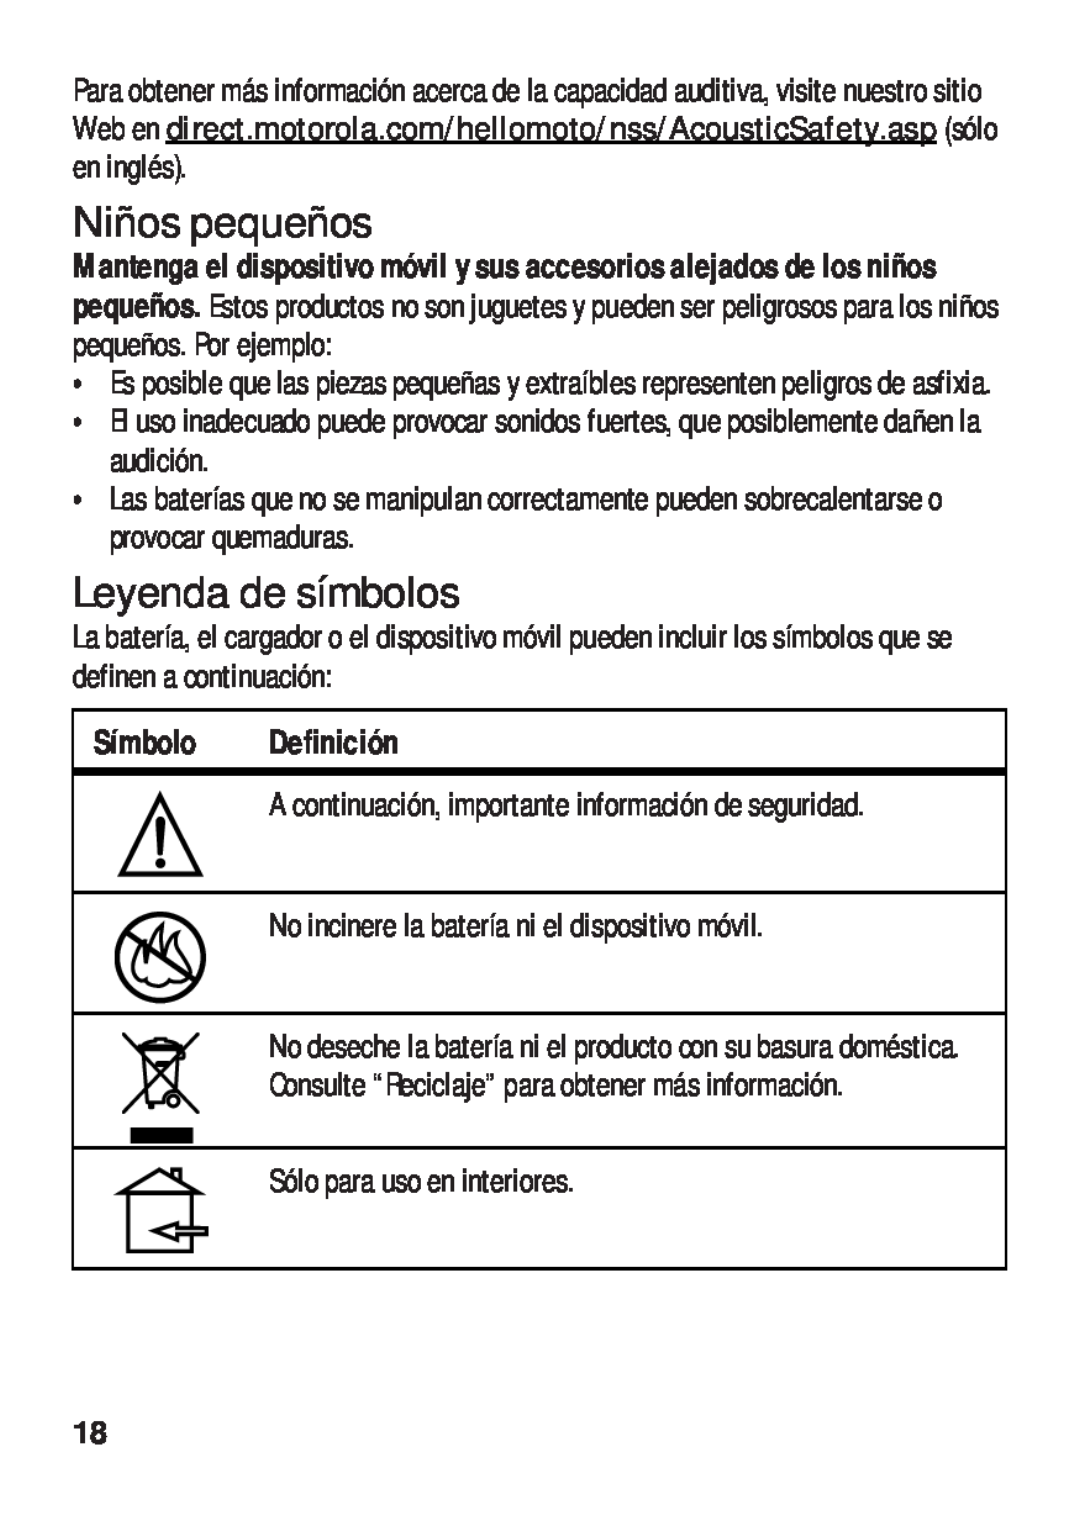 Motorola TX500 manual Niños pequeños, Leyenda de símbolos, Símbolo Definición 